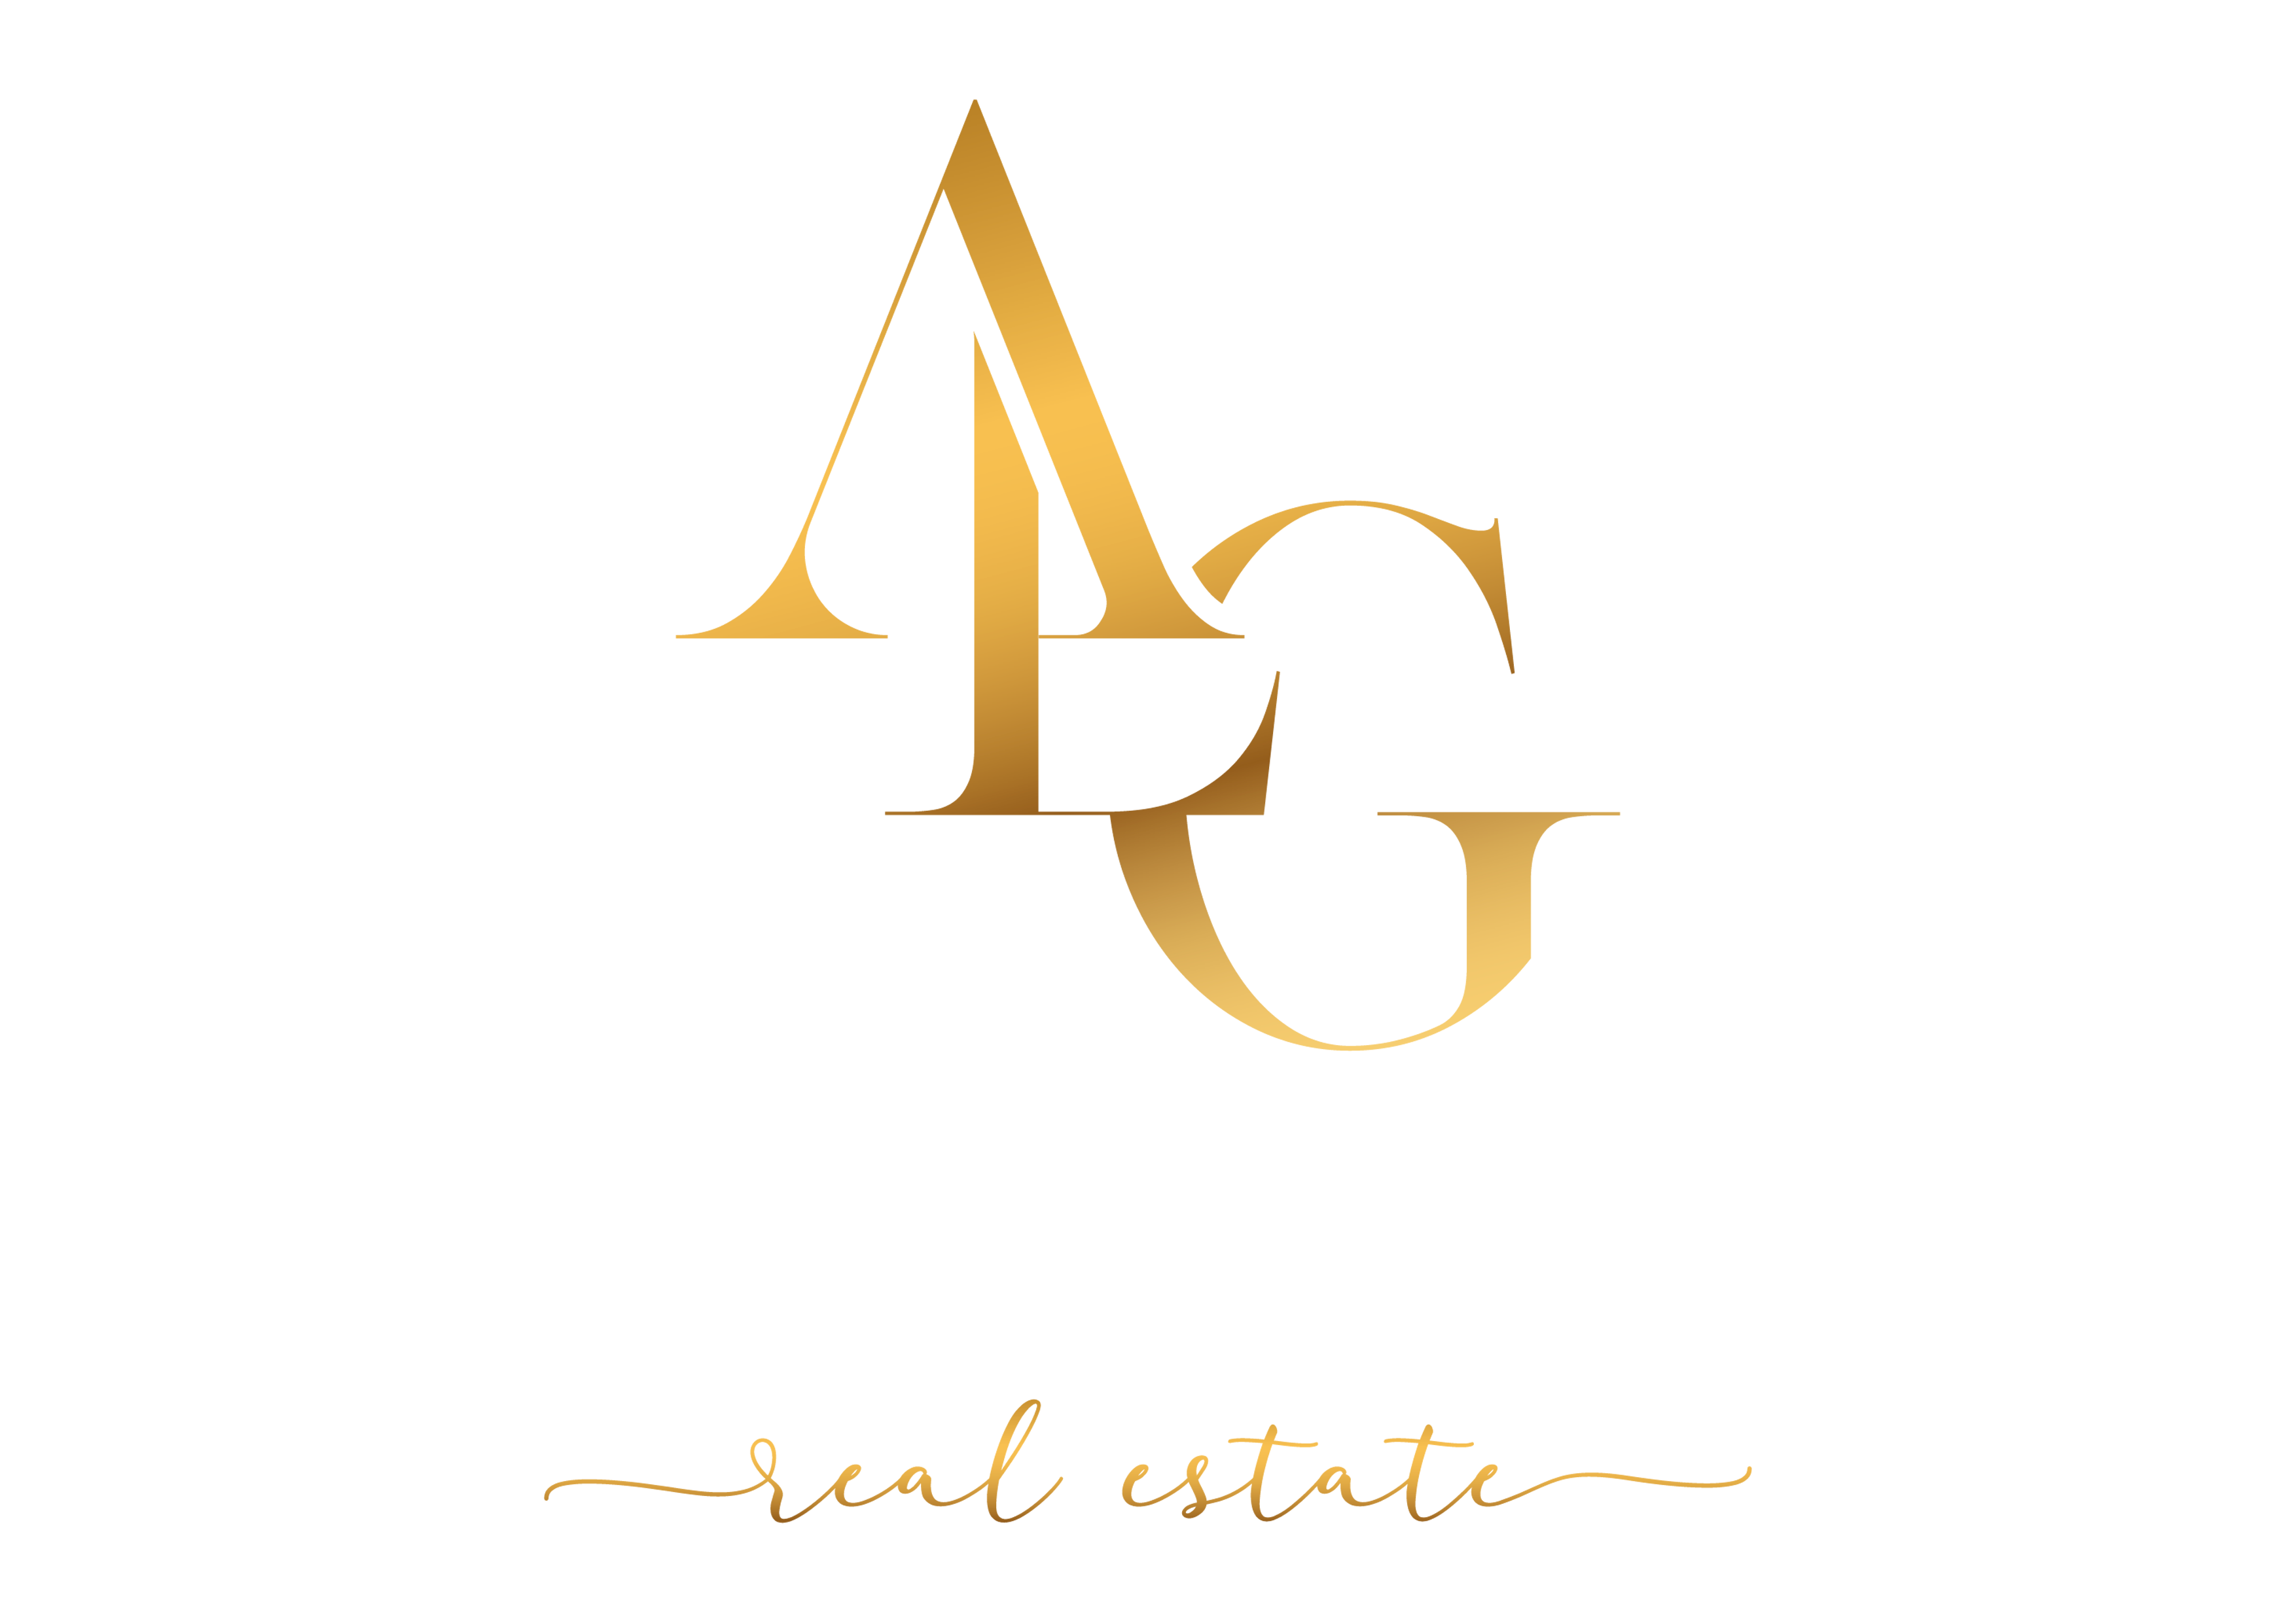 Atlanta Luxe Group